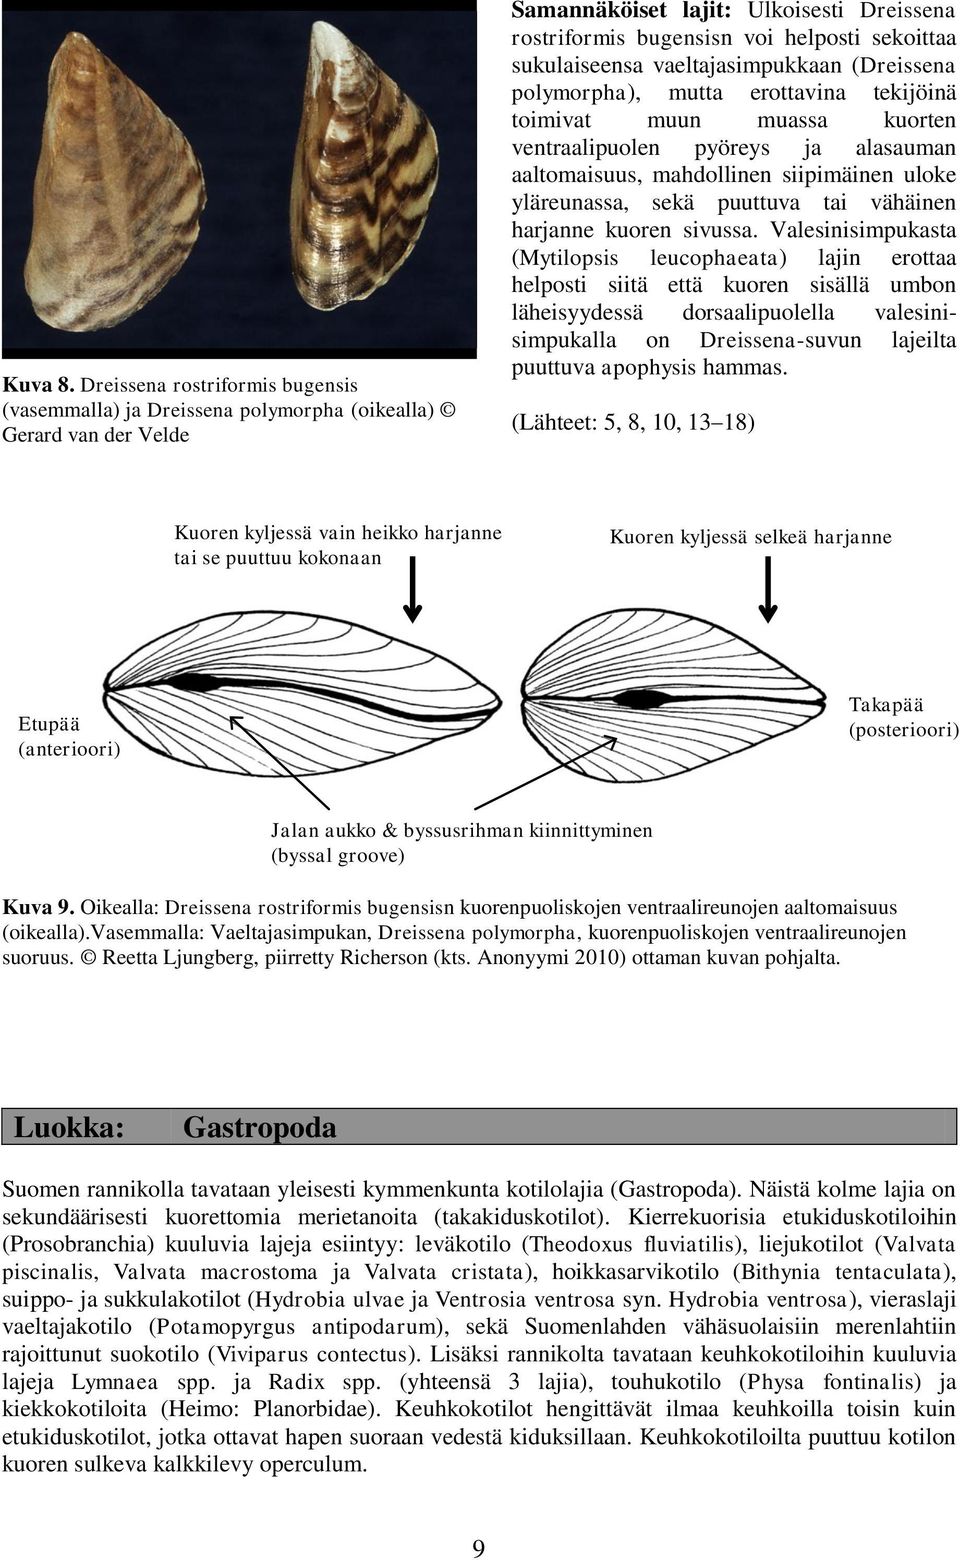 sukulaiseensa vaeltajasimpukkaan (Dreissena polymorpha), mutta erottavina tekijöinä toimivat muun muassa kuorten ventraalipuolen pyöreys ja alasauman aaltomaisuus, mahdollinen siipimäinen uloke